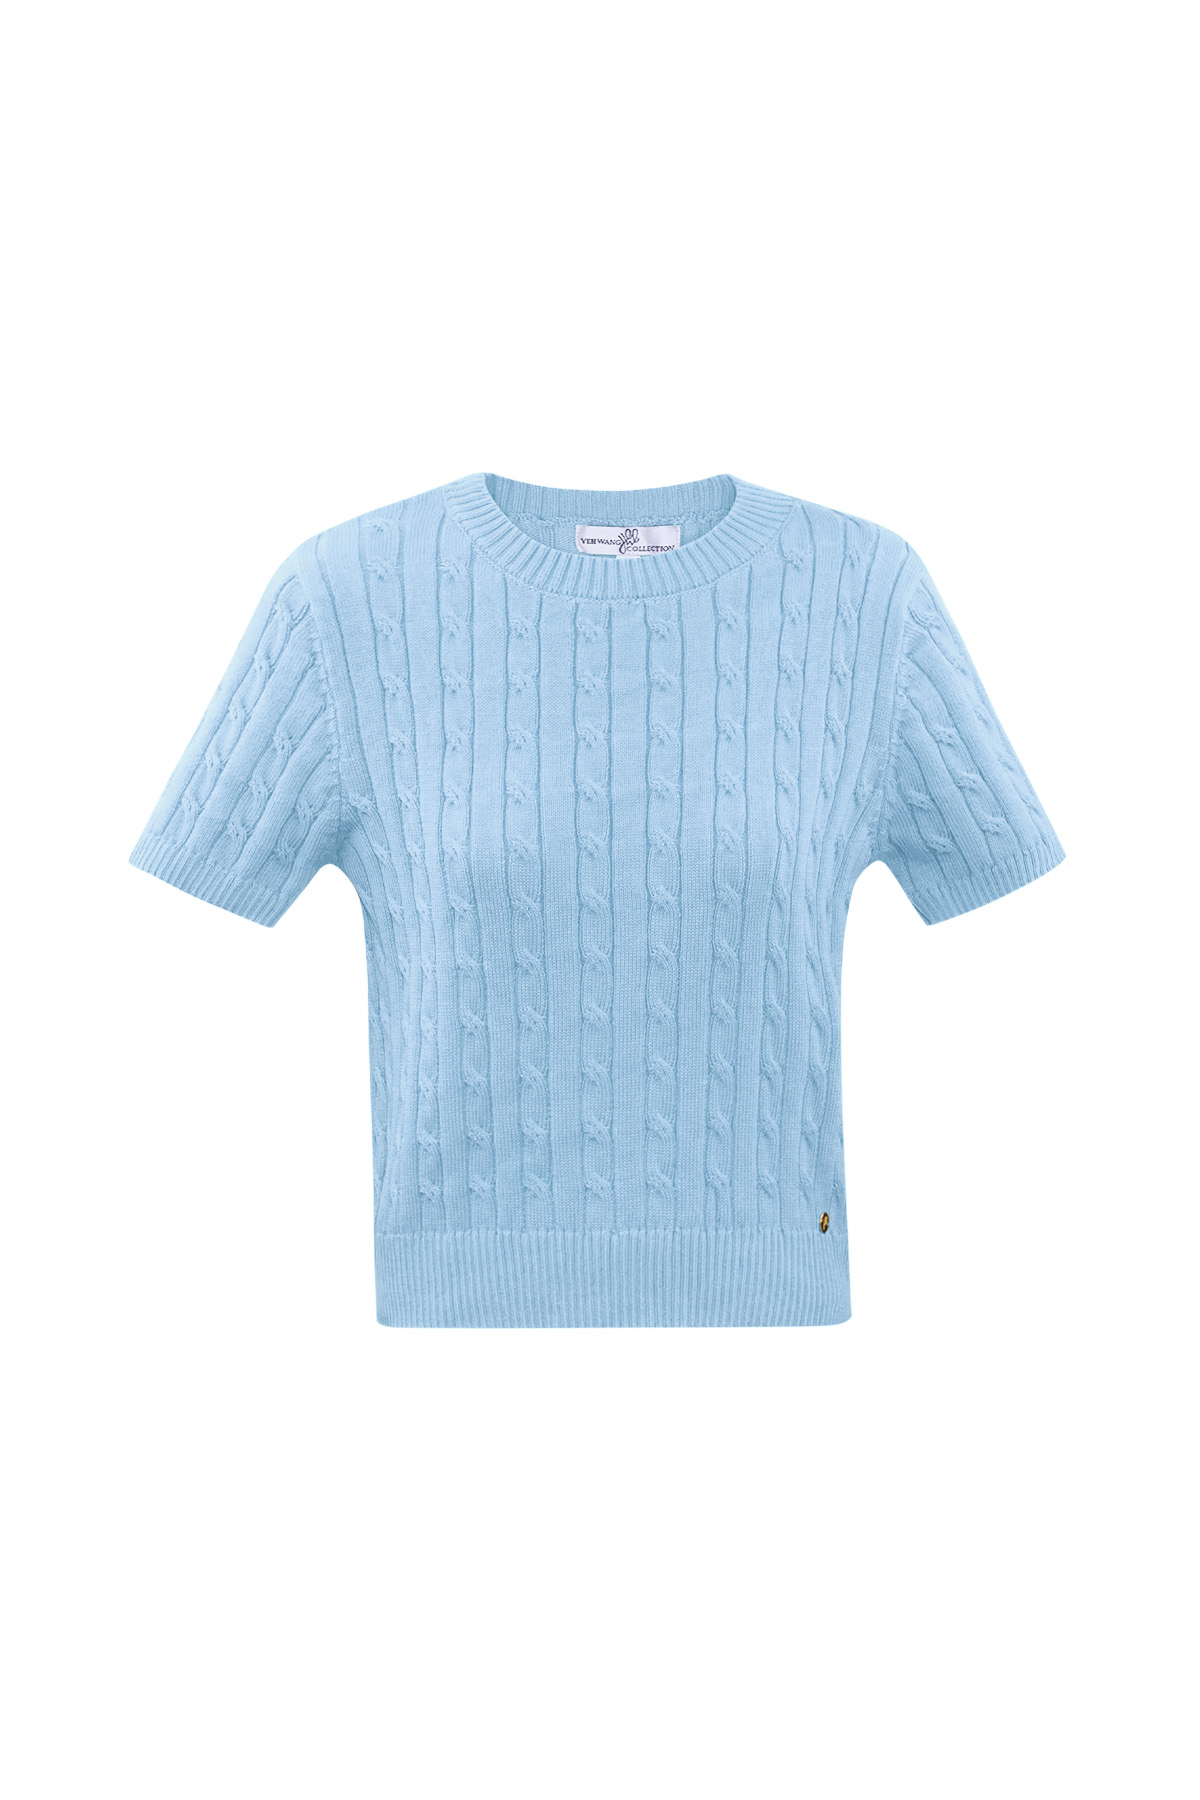 Jersey de punto con trenzas y manga corta pequeño/mediano – azul claro